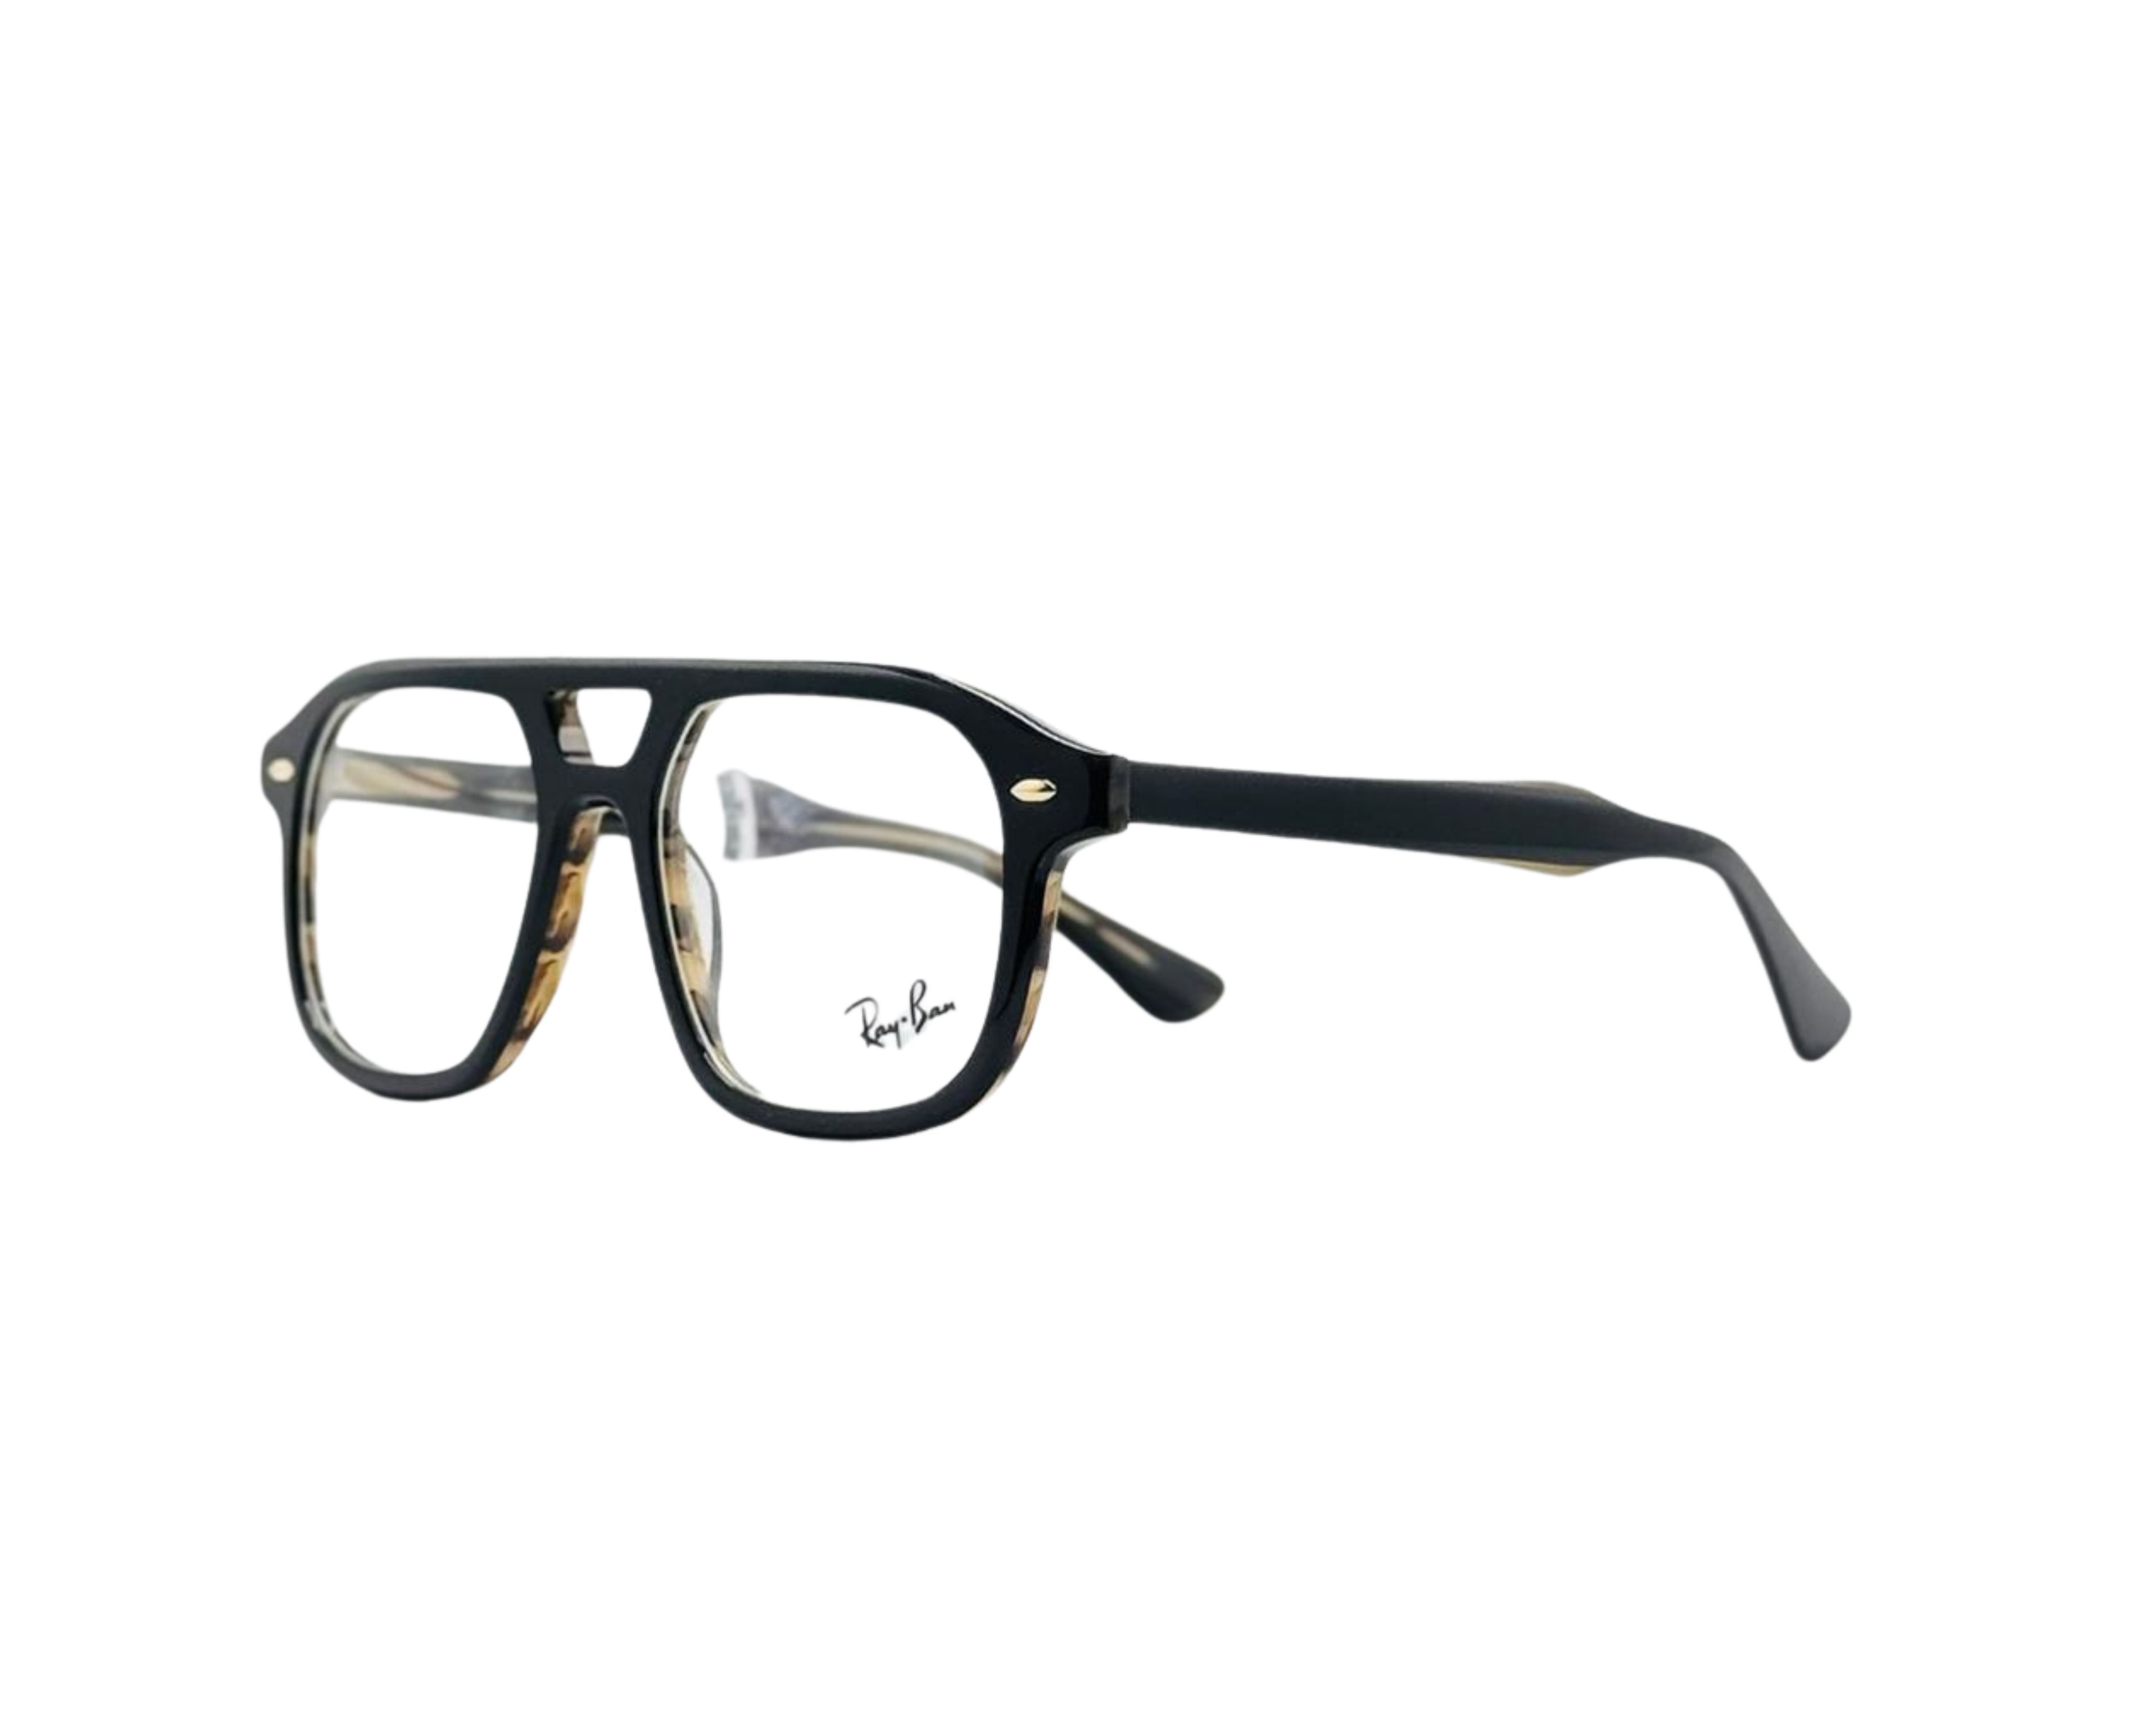 NS Luxury - J15 - Black - Eyeglasses